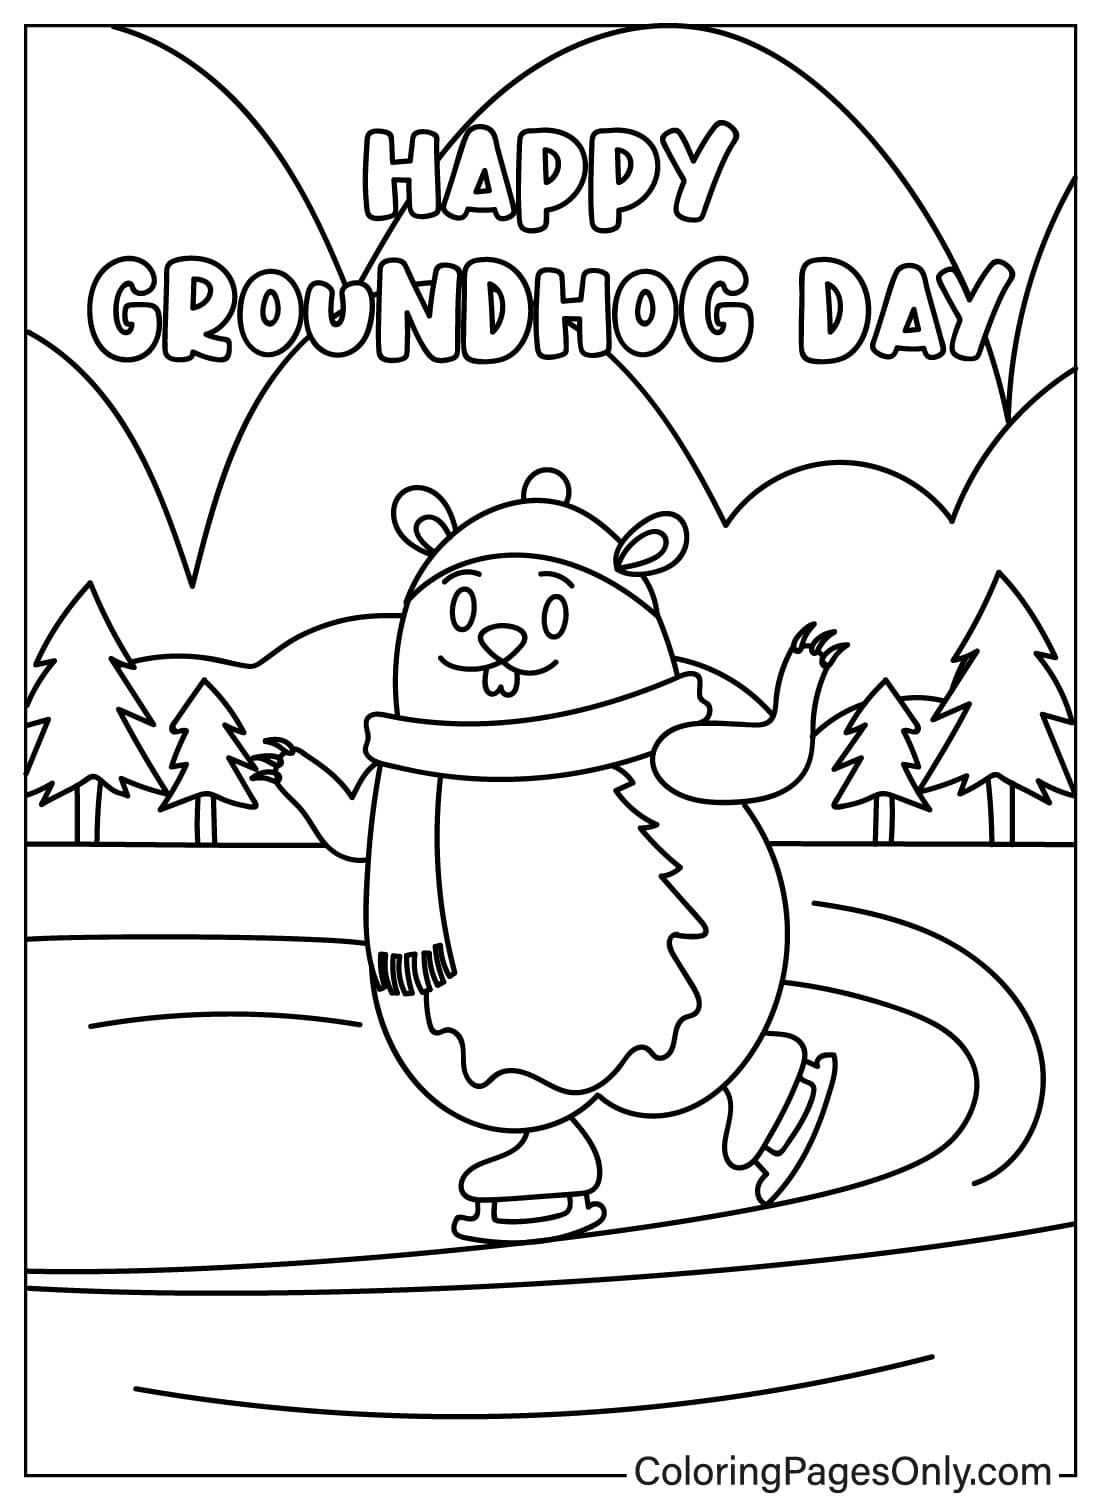 Página para colorear del Día de la Marmota gratis del Día de la Marmota